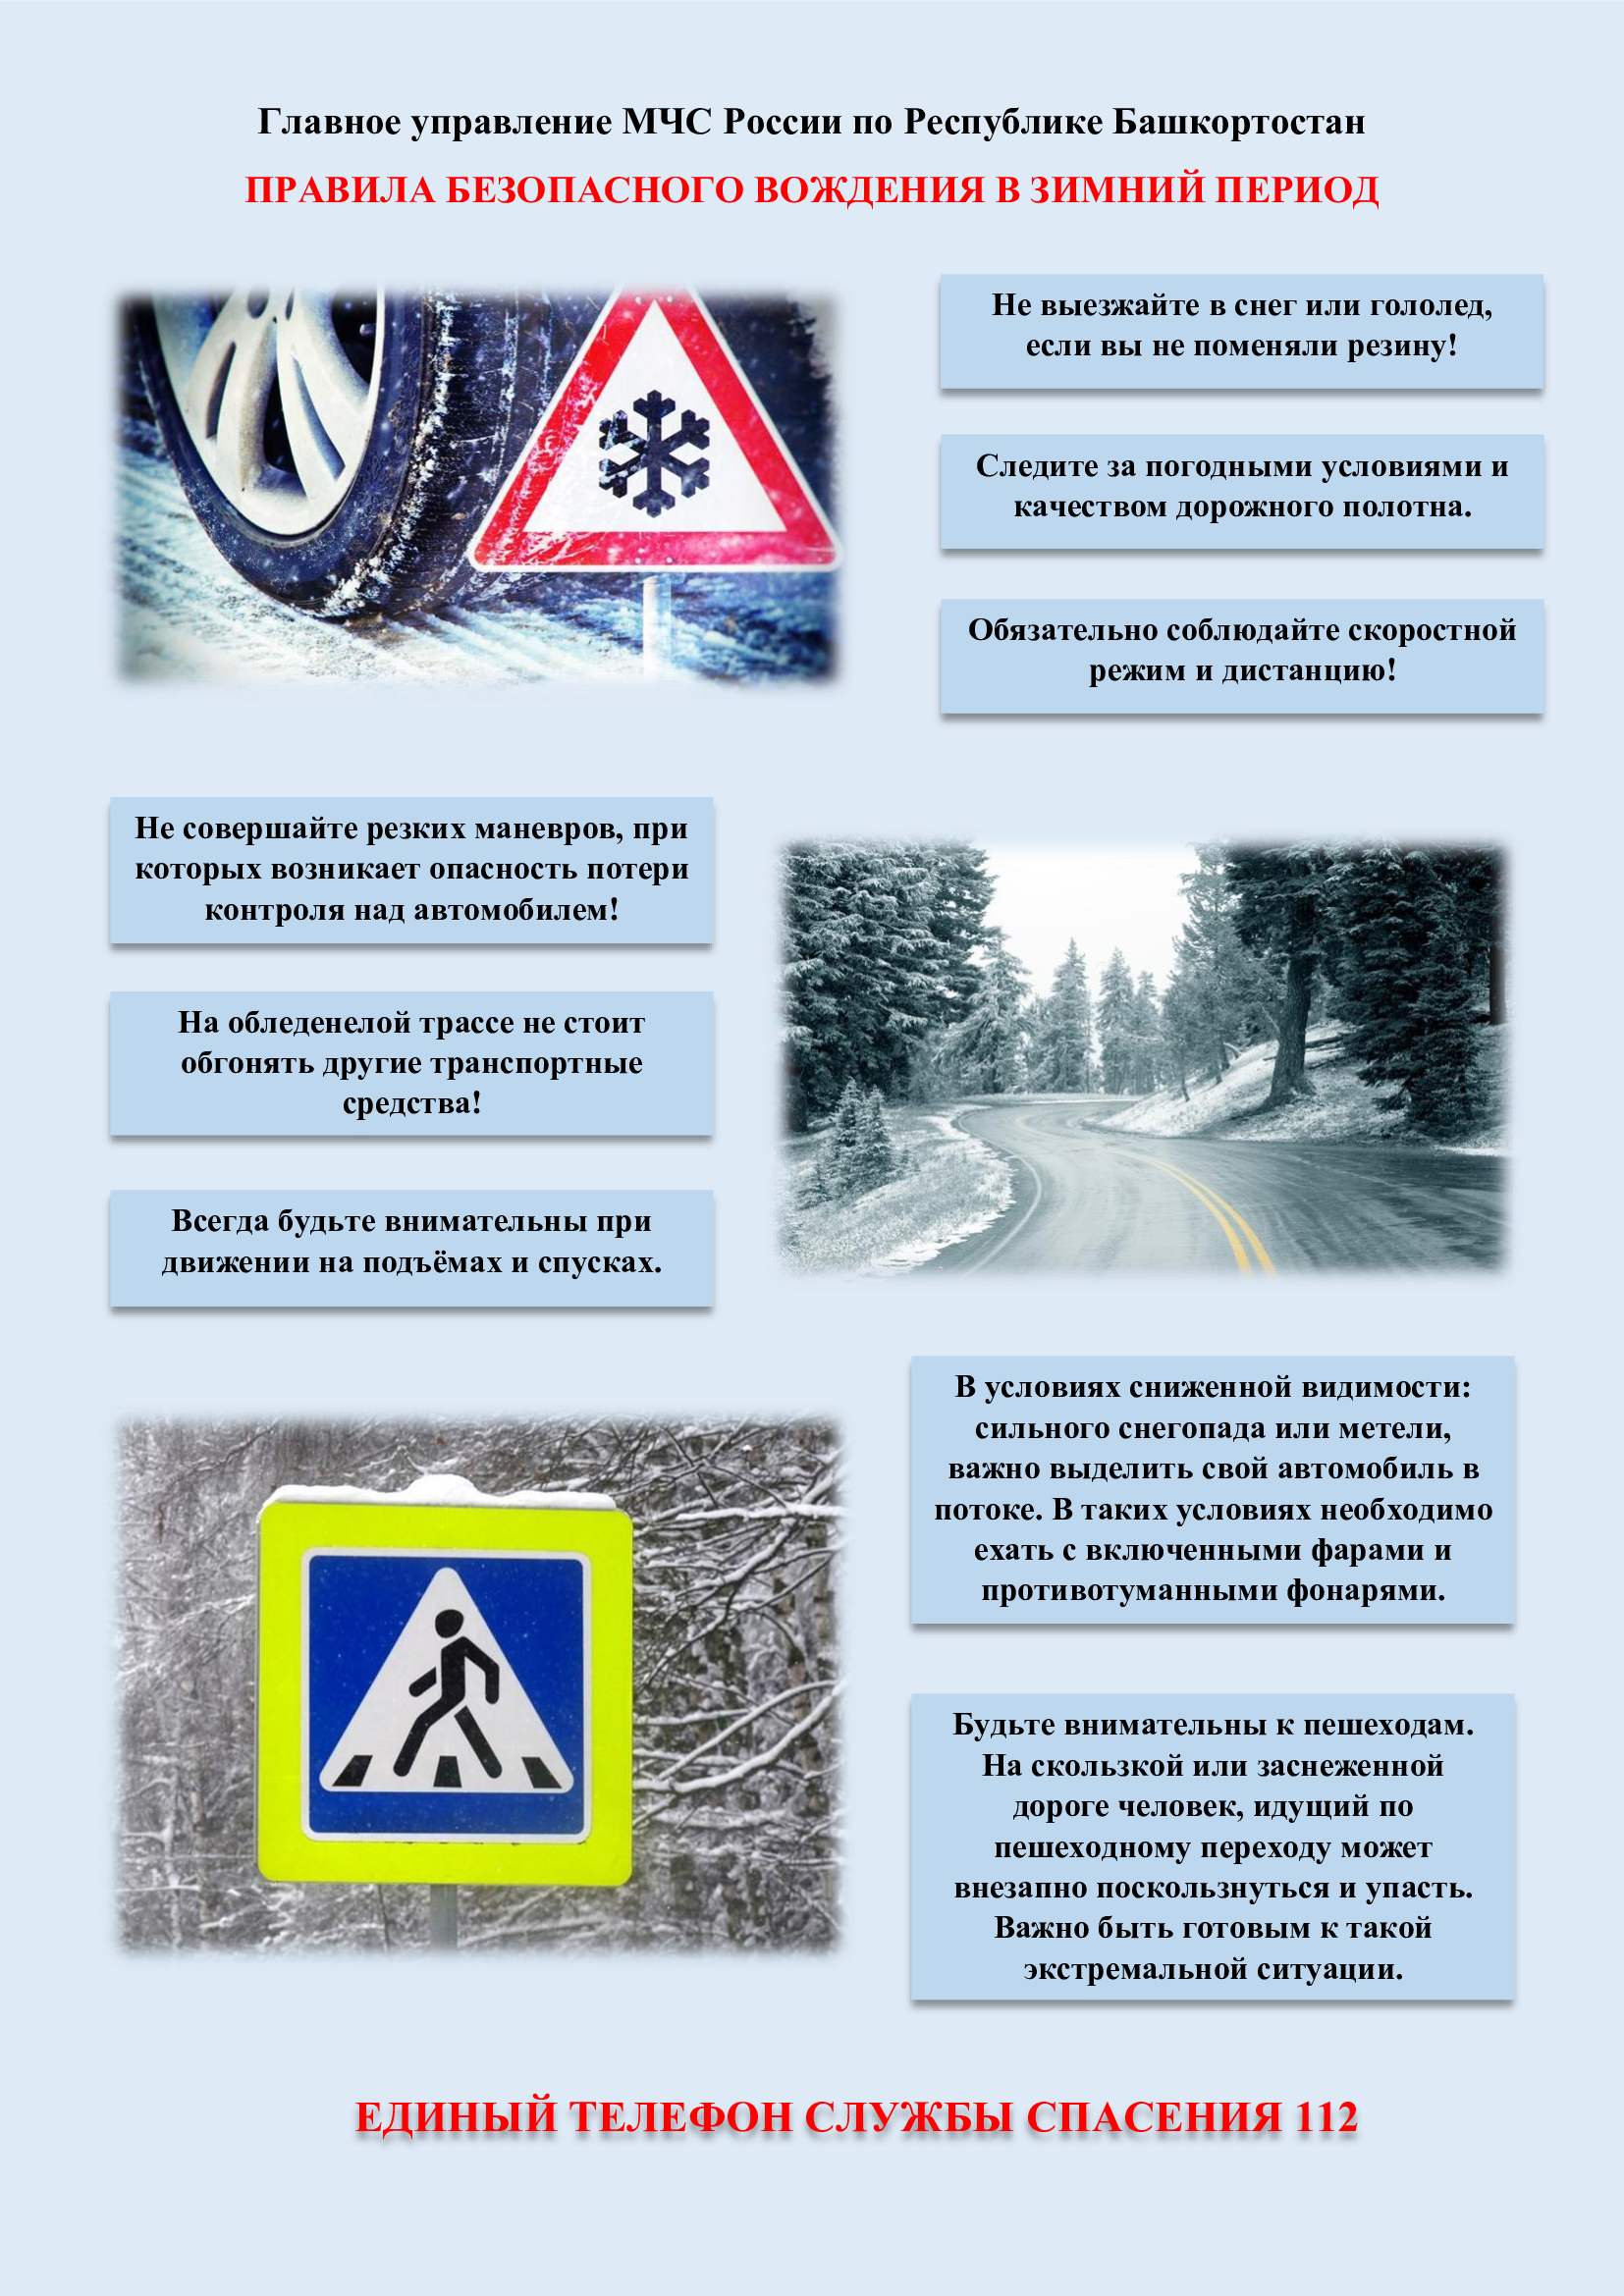 Правила безопасного вождения в зимний период